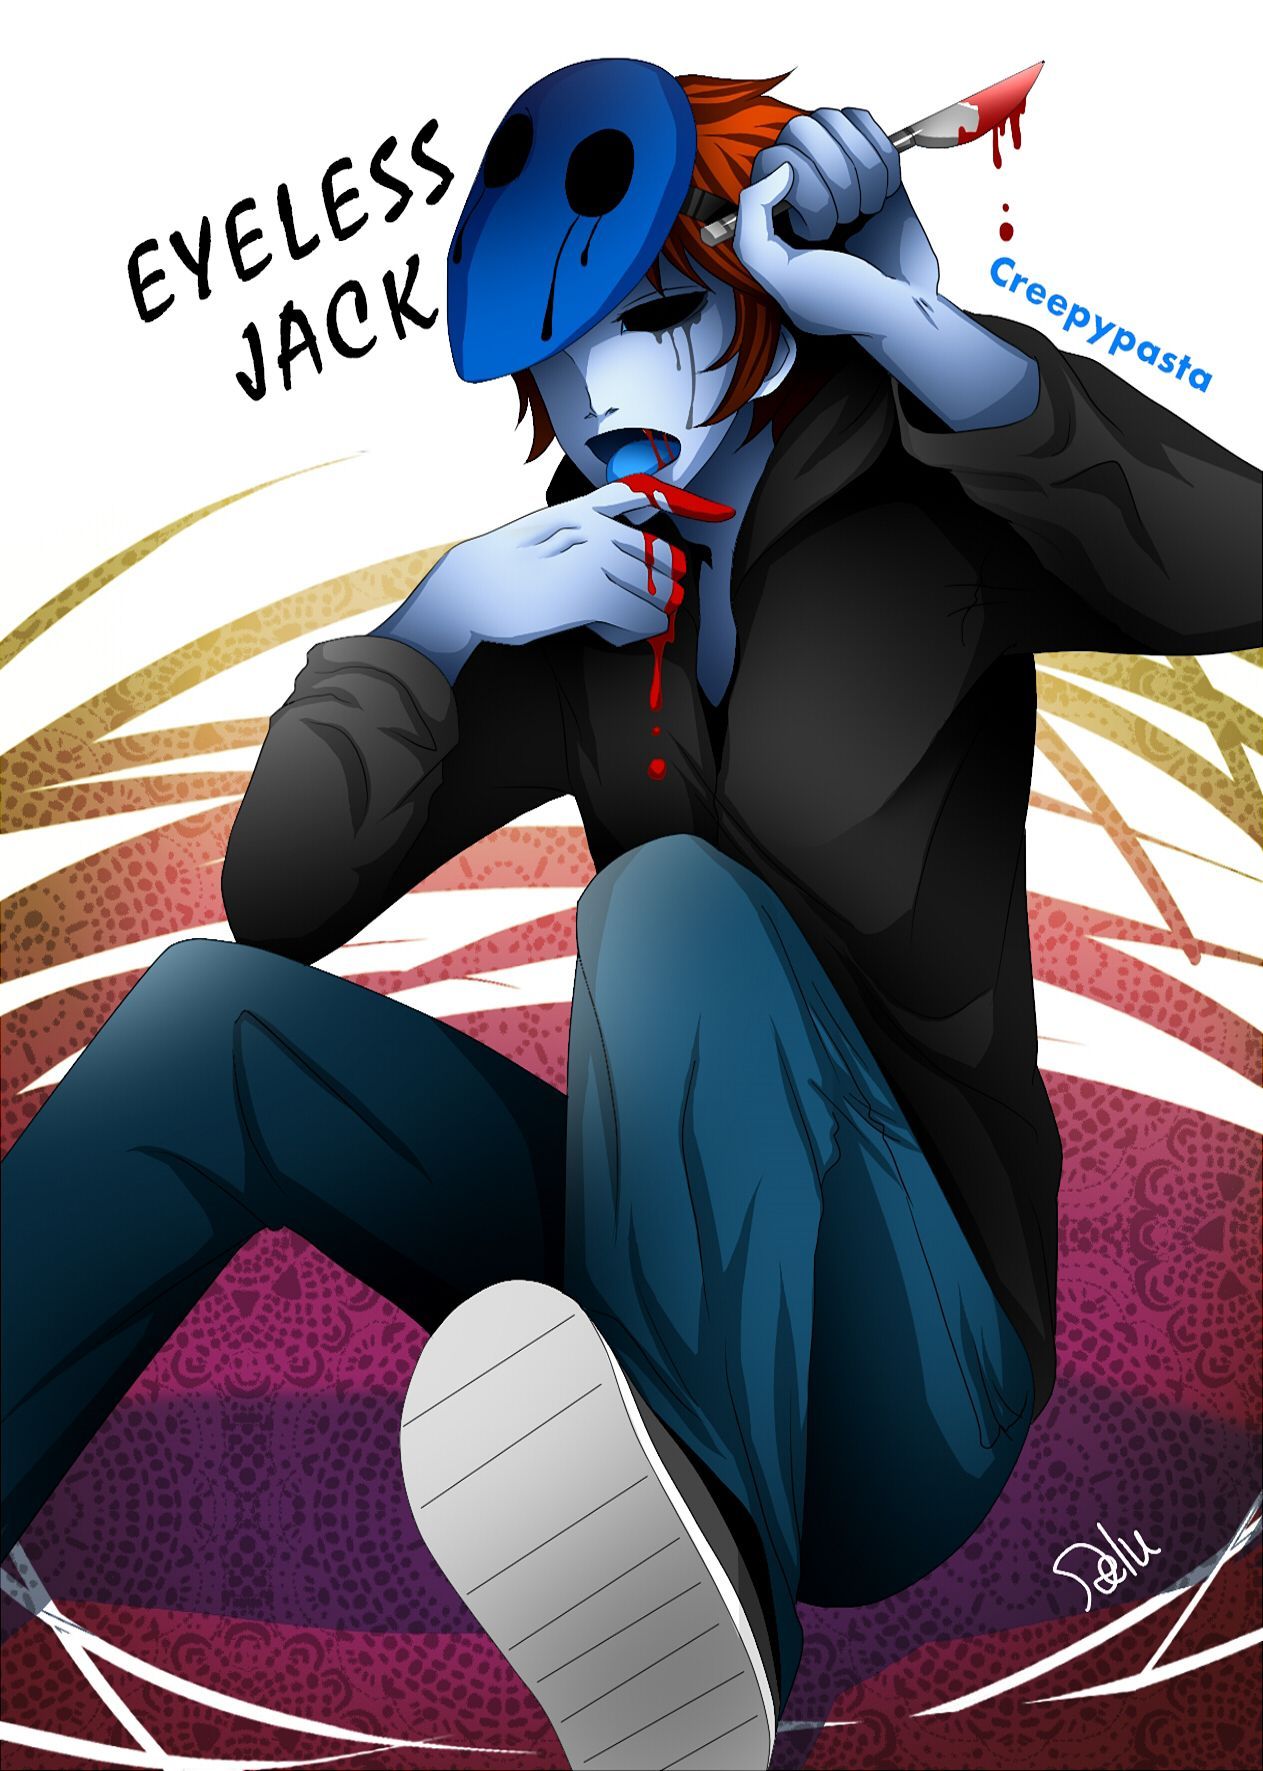 Eyeless Jack Anime Image Board. Creepypasta, Jack